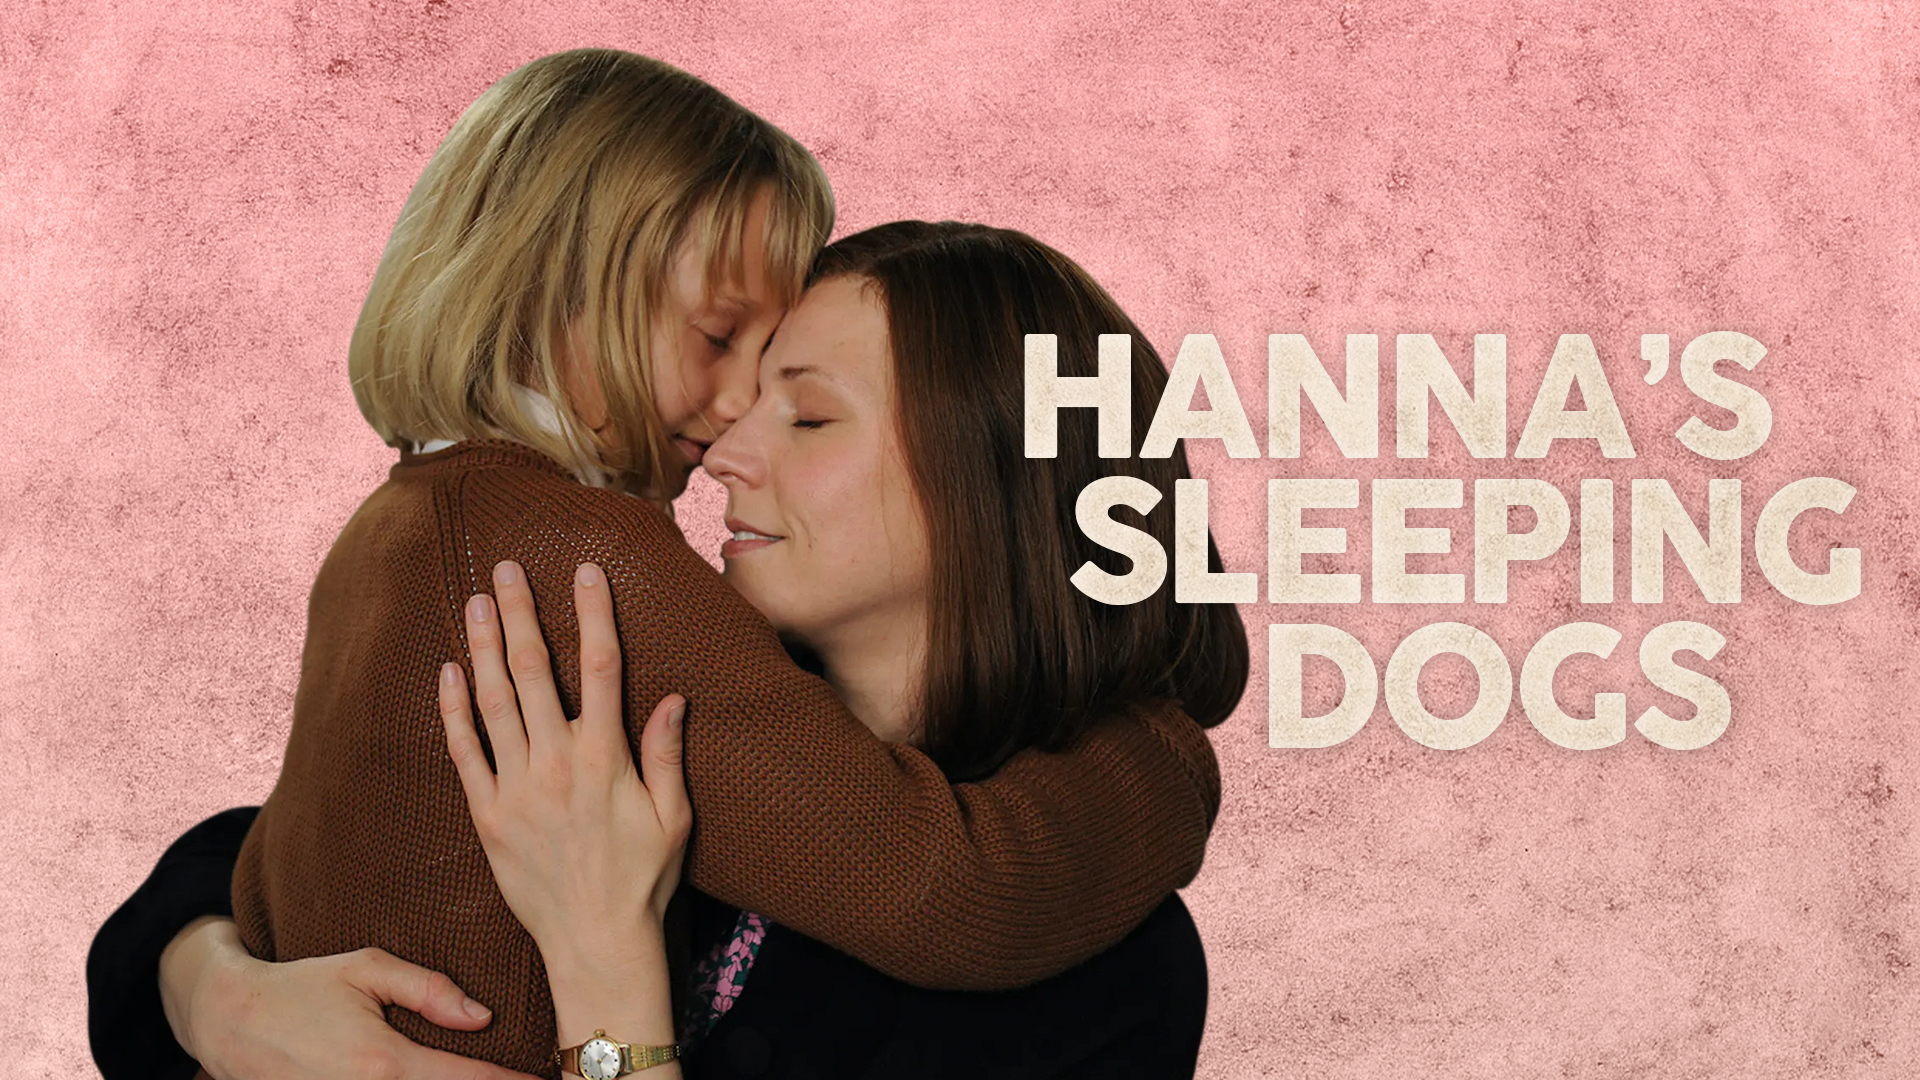 Hanna's Sleeping Dogs - ChaiFlicks - Watch Jewish and Israeli Movies